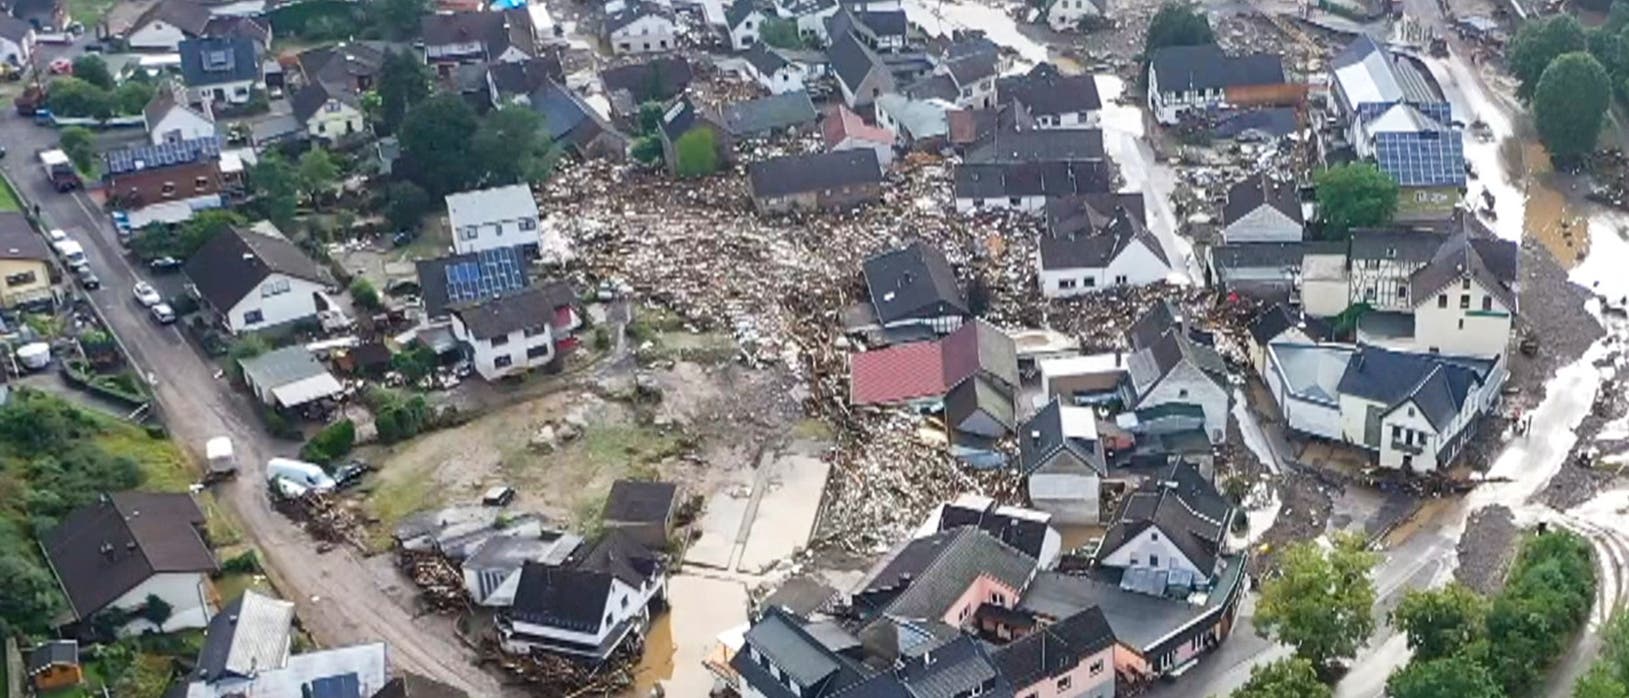 Luftbild der Trümmer in Schuld bei Adenau. Dort nahm nach schweren Unwettern der Fluss Ahr vorübergehend Teile seiner früheren Flussaue in Besitz. Sechs Häuser stürzten ein.